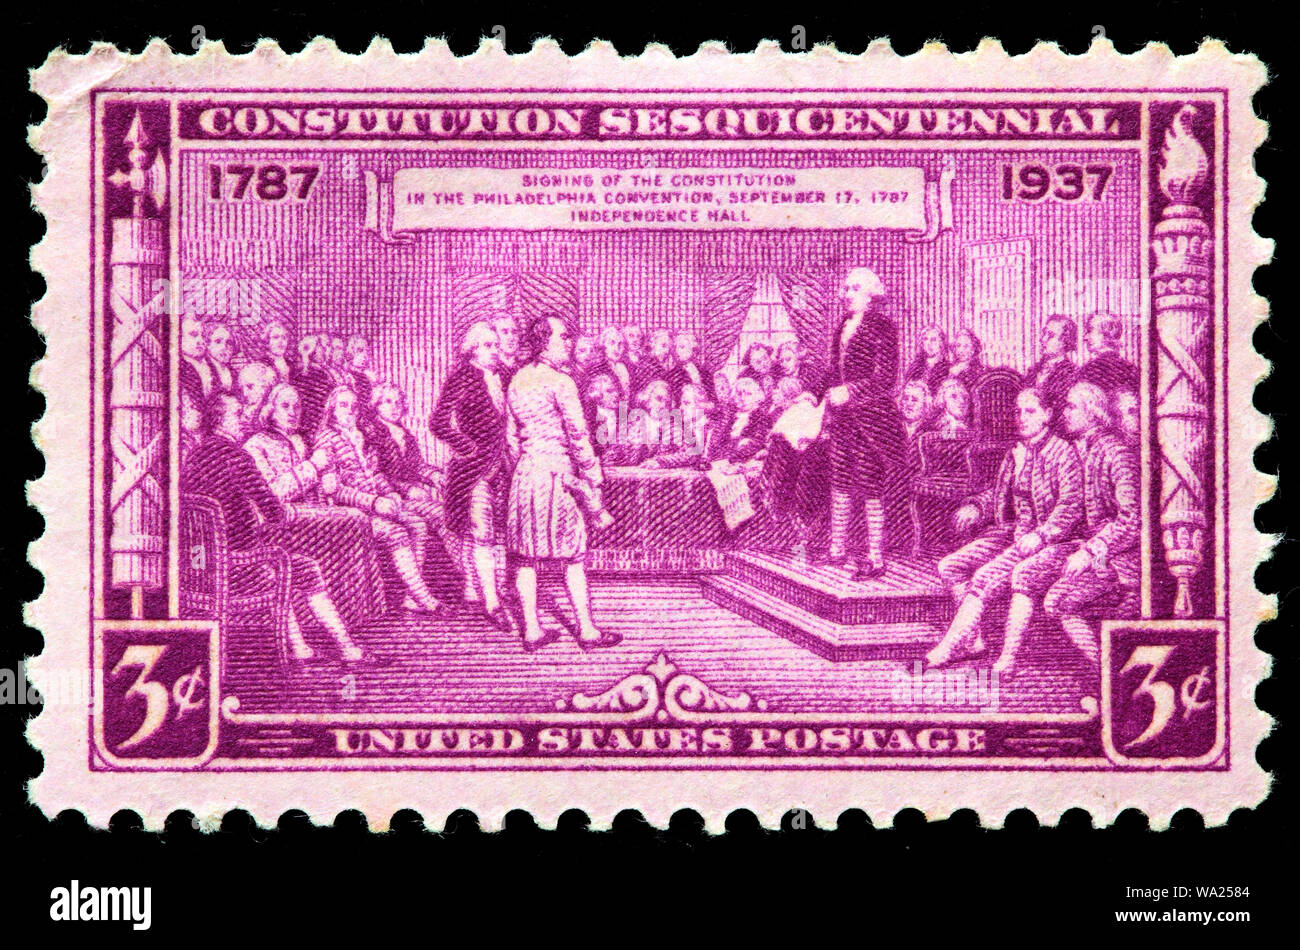 Anpassung der Verfassung, 1787, Philadelphia, Pennsylvania, Verfassung Sesquicentennial, Briefmarke, USA, 1937 Stockfoto